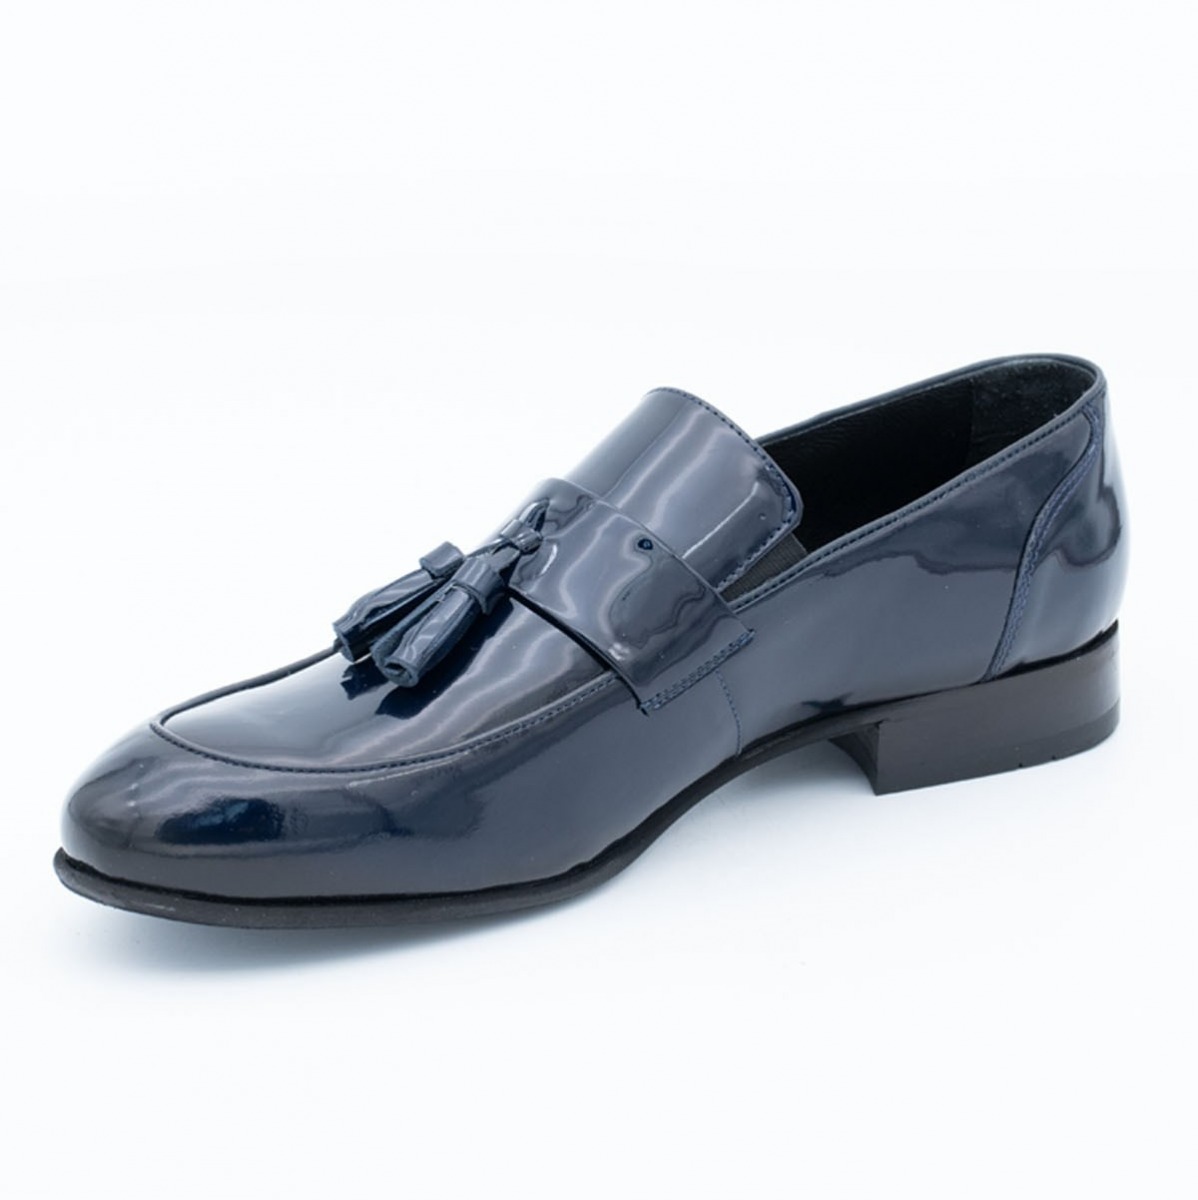 Flo Erkek Deri Klasik Ayakkabı İ1811459-1 M 1000 LACİVERT RUGAN. 1